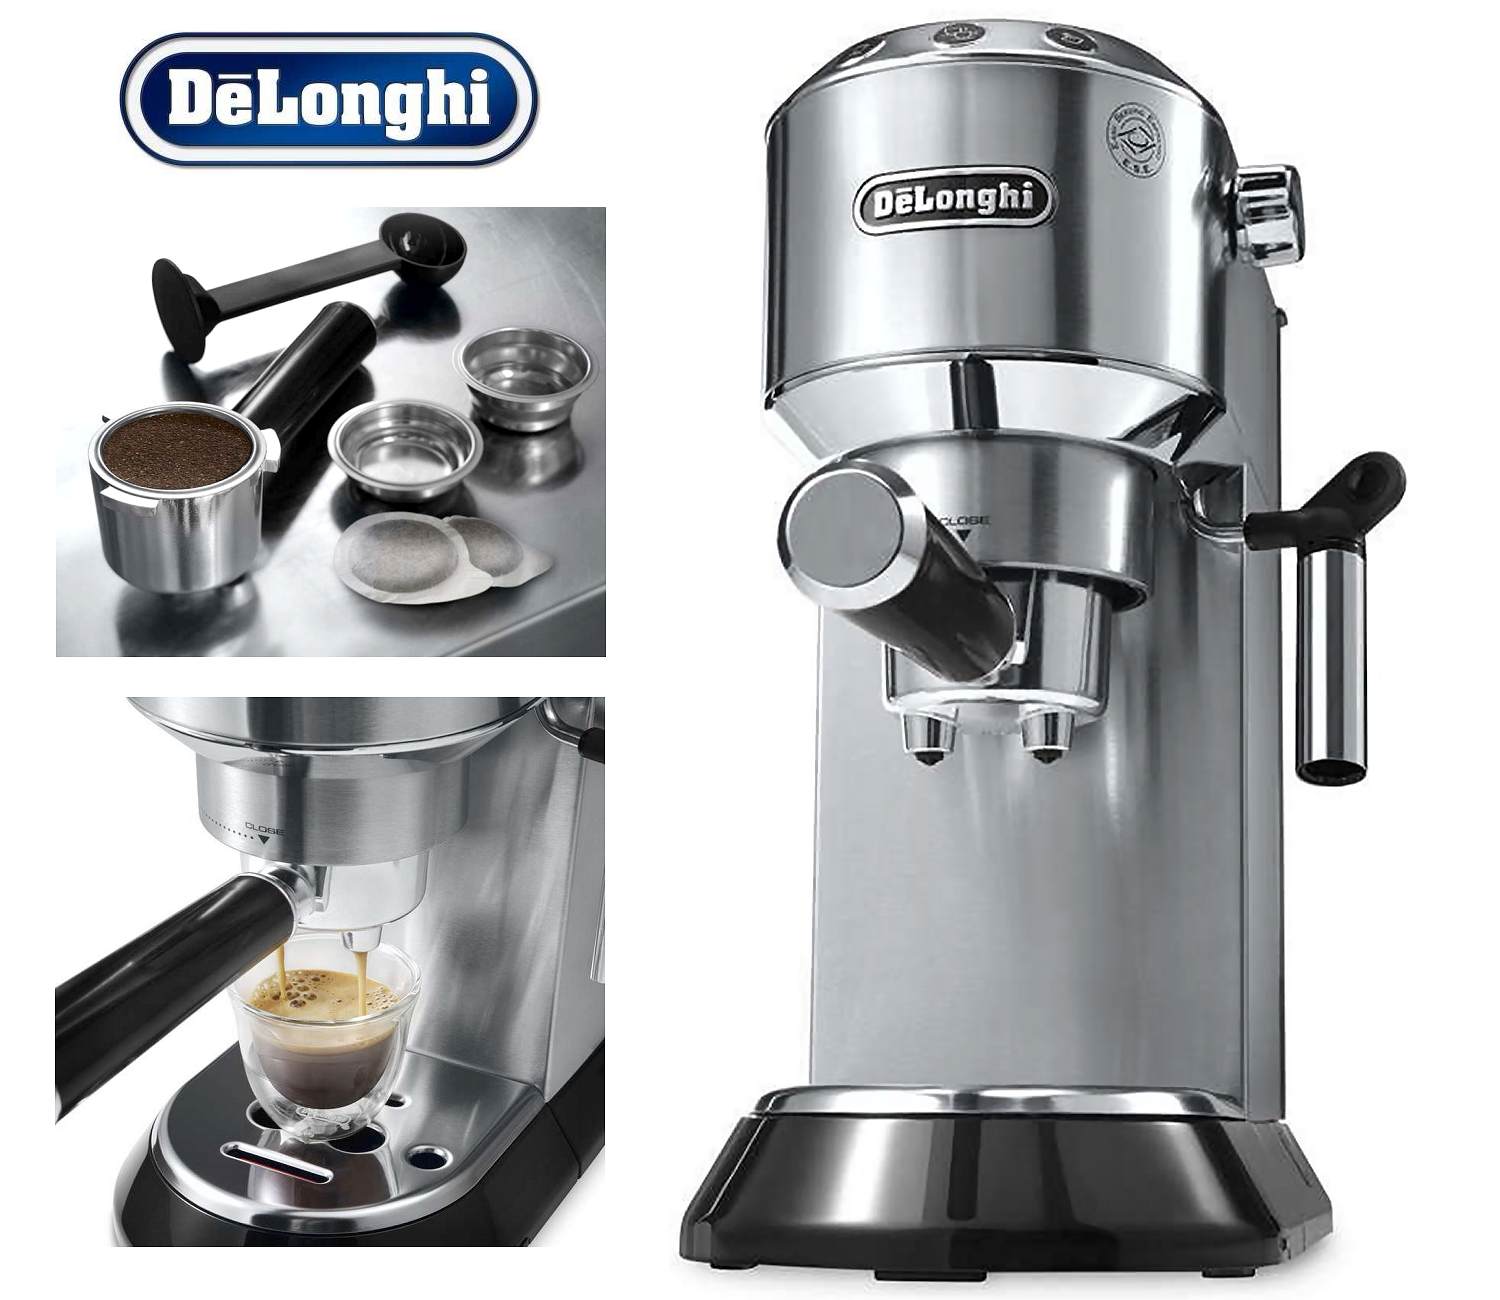 Die 5 besten klassischen Siebträger Espressomaschinen: DeLonghi EC 680 Dedica Siebträger Espressomaschine - Testsieger Stiftung Warentest 12/2016